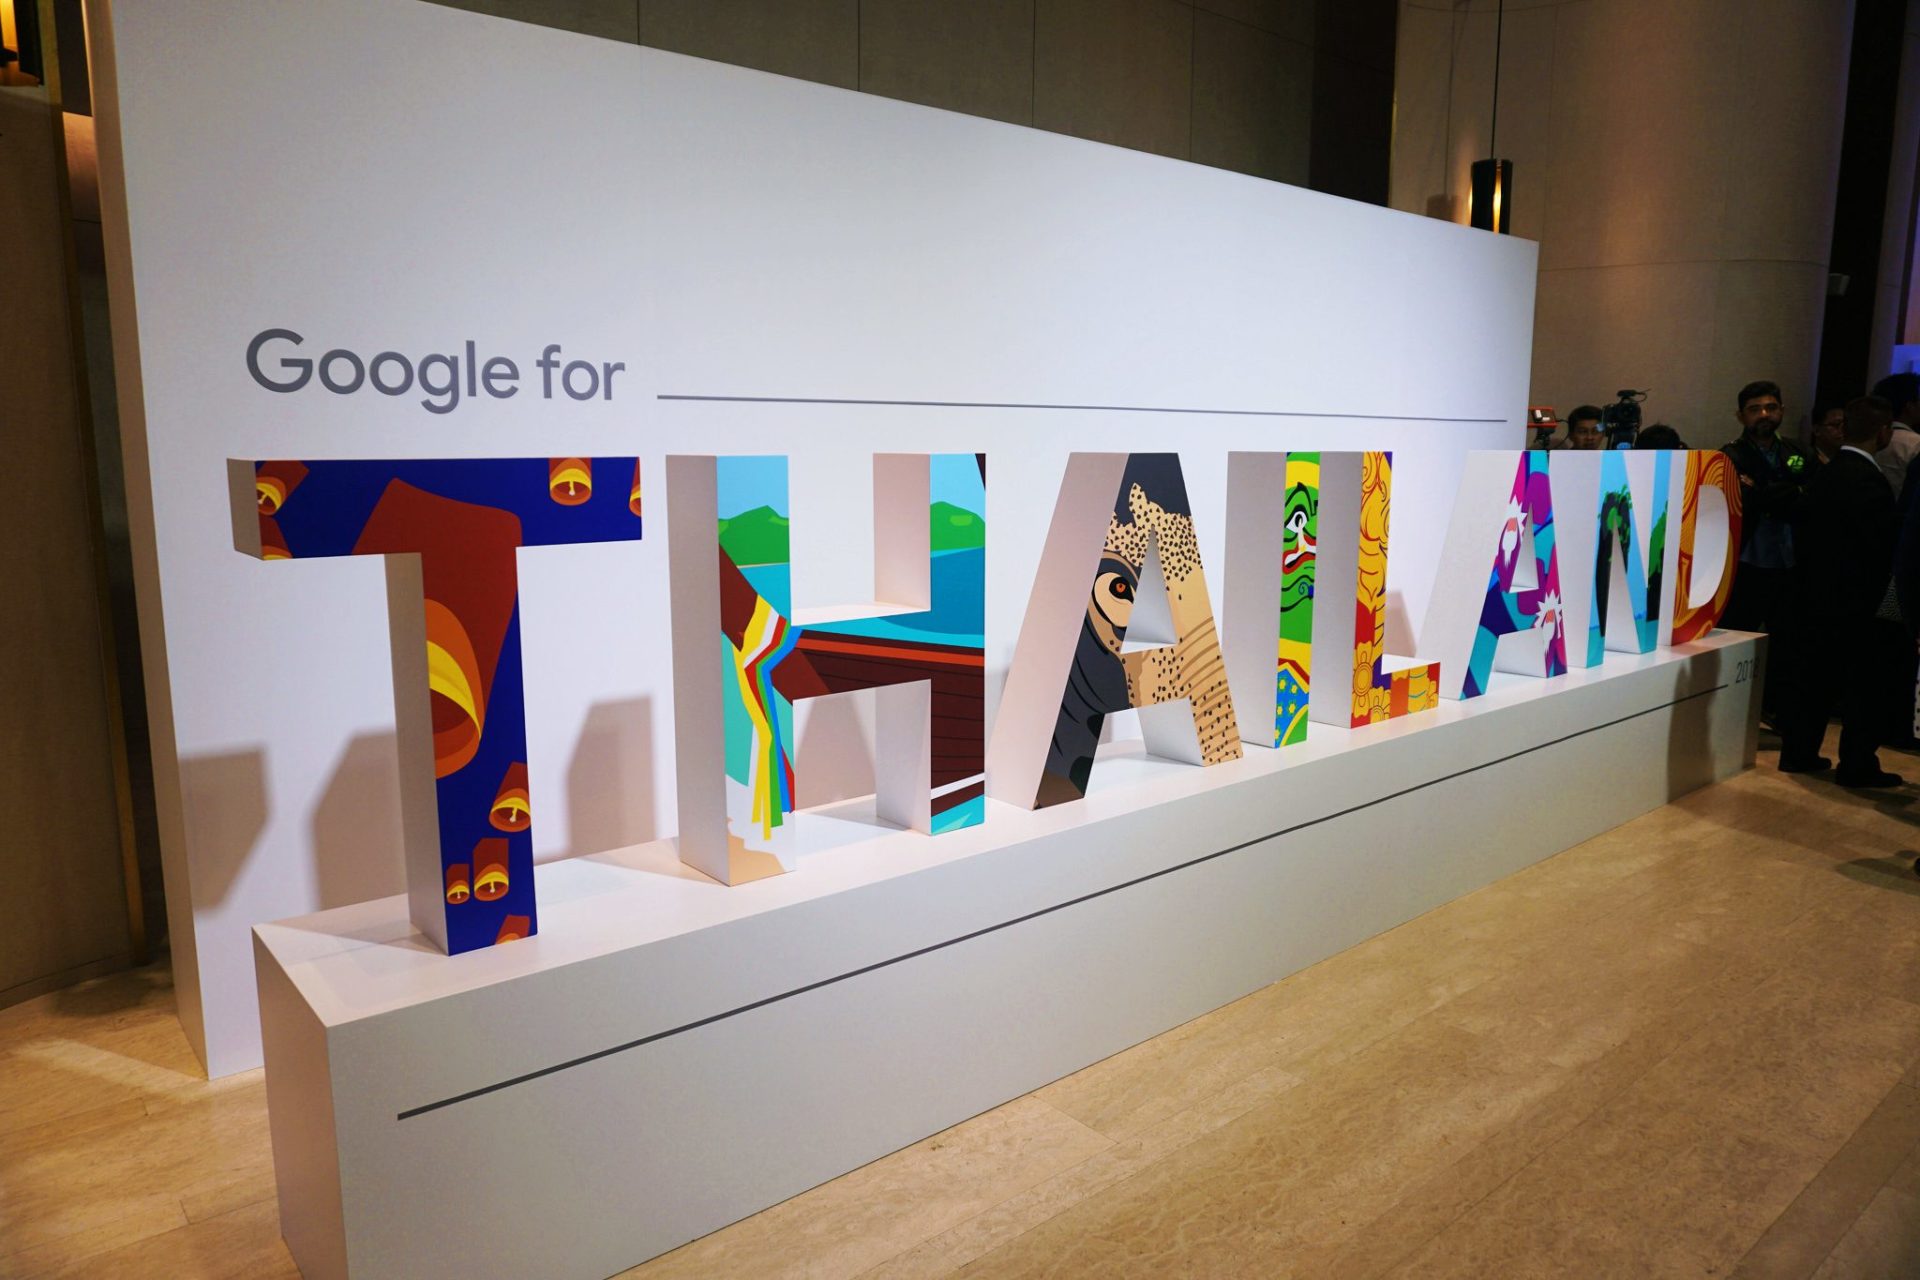 ซื้อใจคนไทยด้วยบริการใหม่จากกูเกิ้ล: Google Maps สำหรับมอเตอร์ไซค์, Google Station ไวไฟฟรีทั่วประเทศ